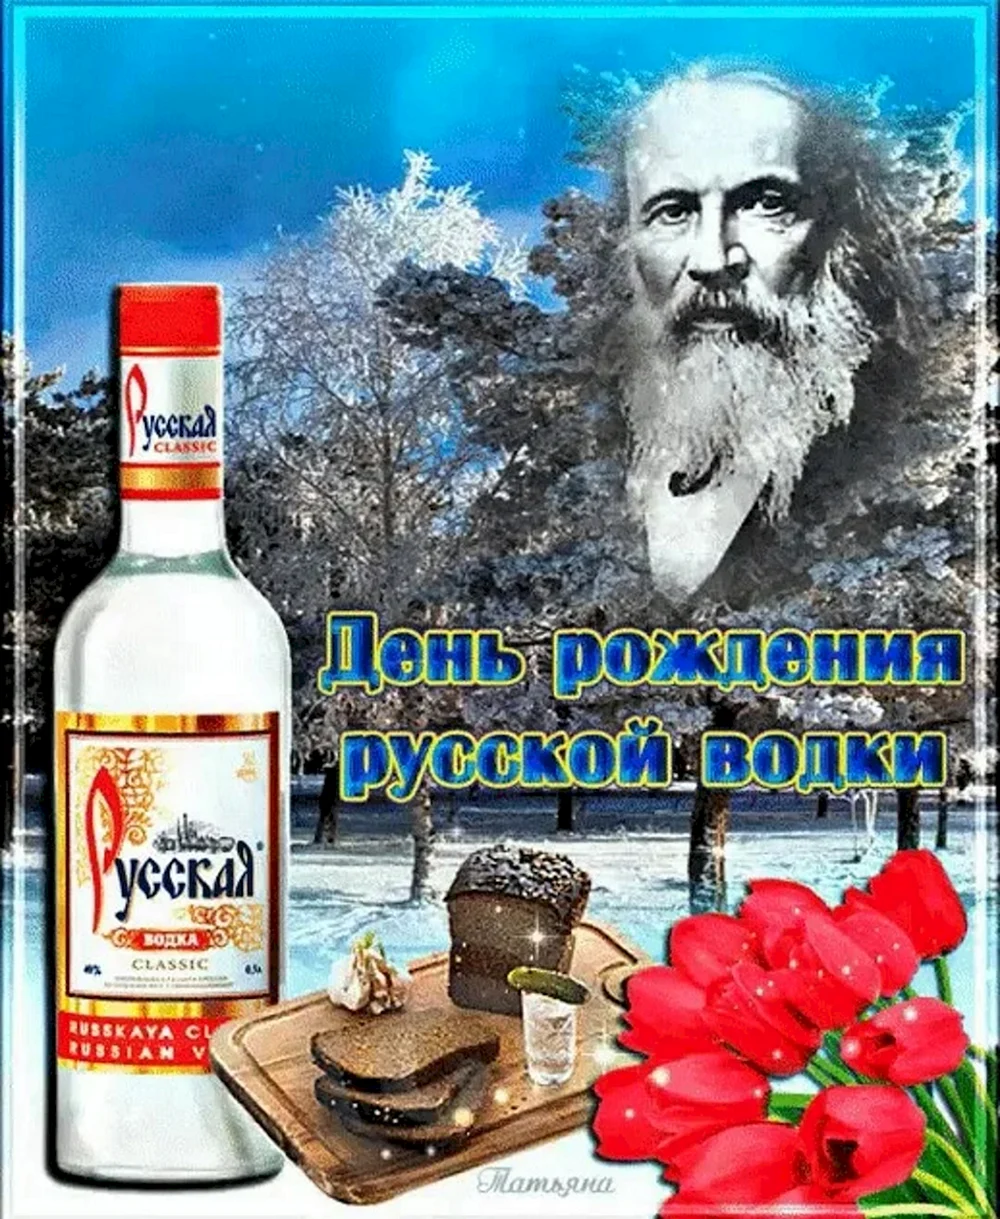 День русской водки